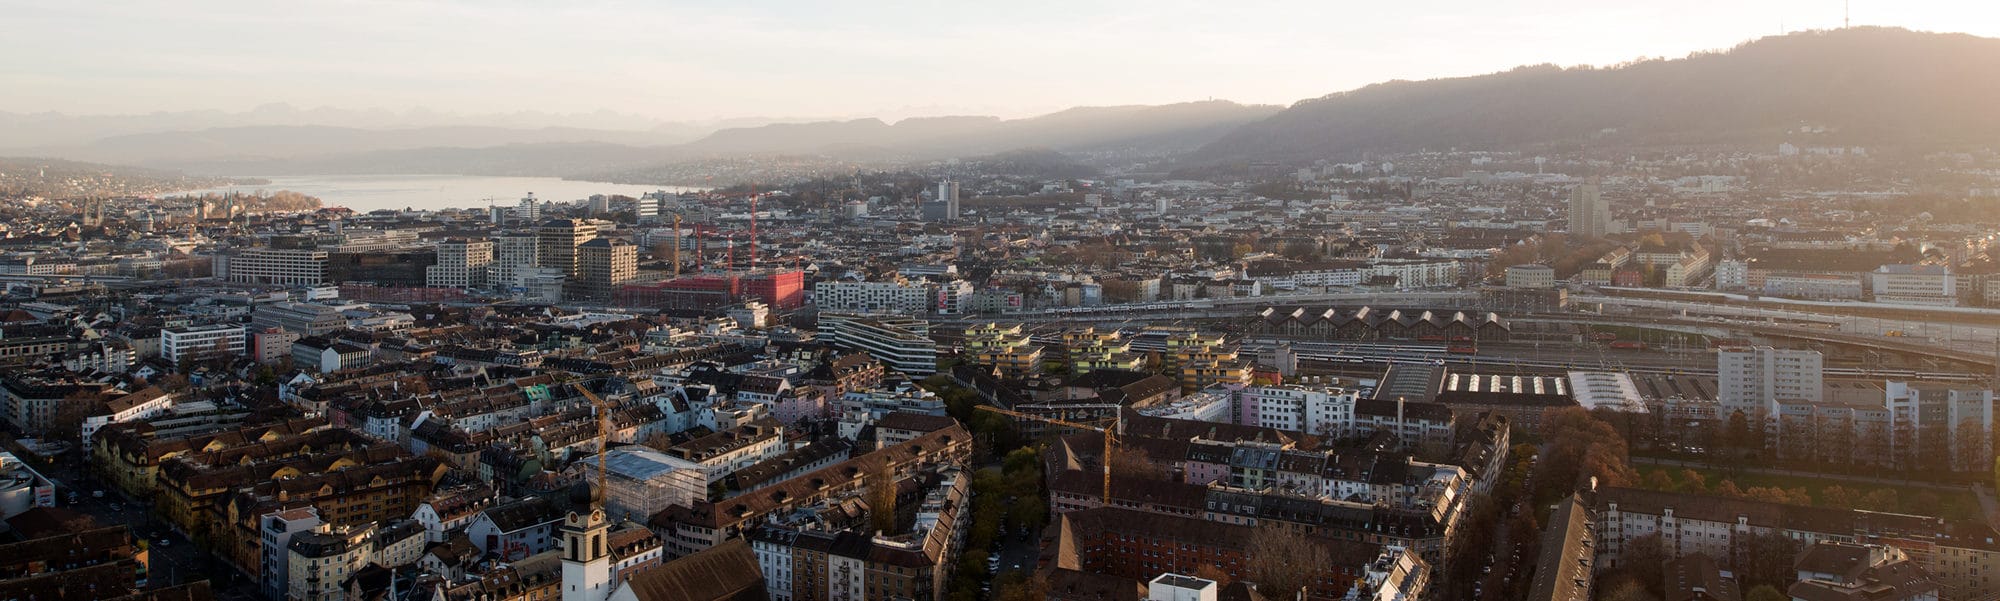 © Amt für Städtebau Zürich, Juliet Haller